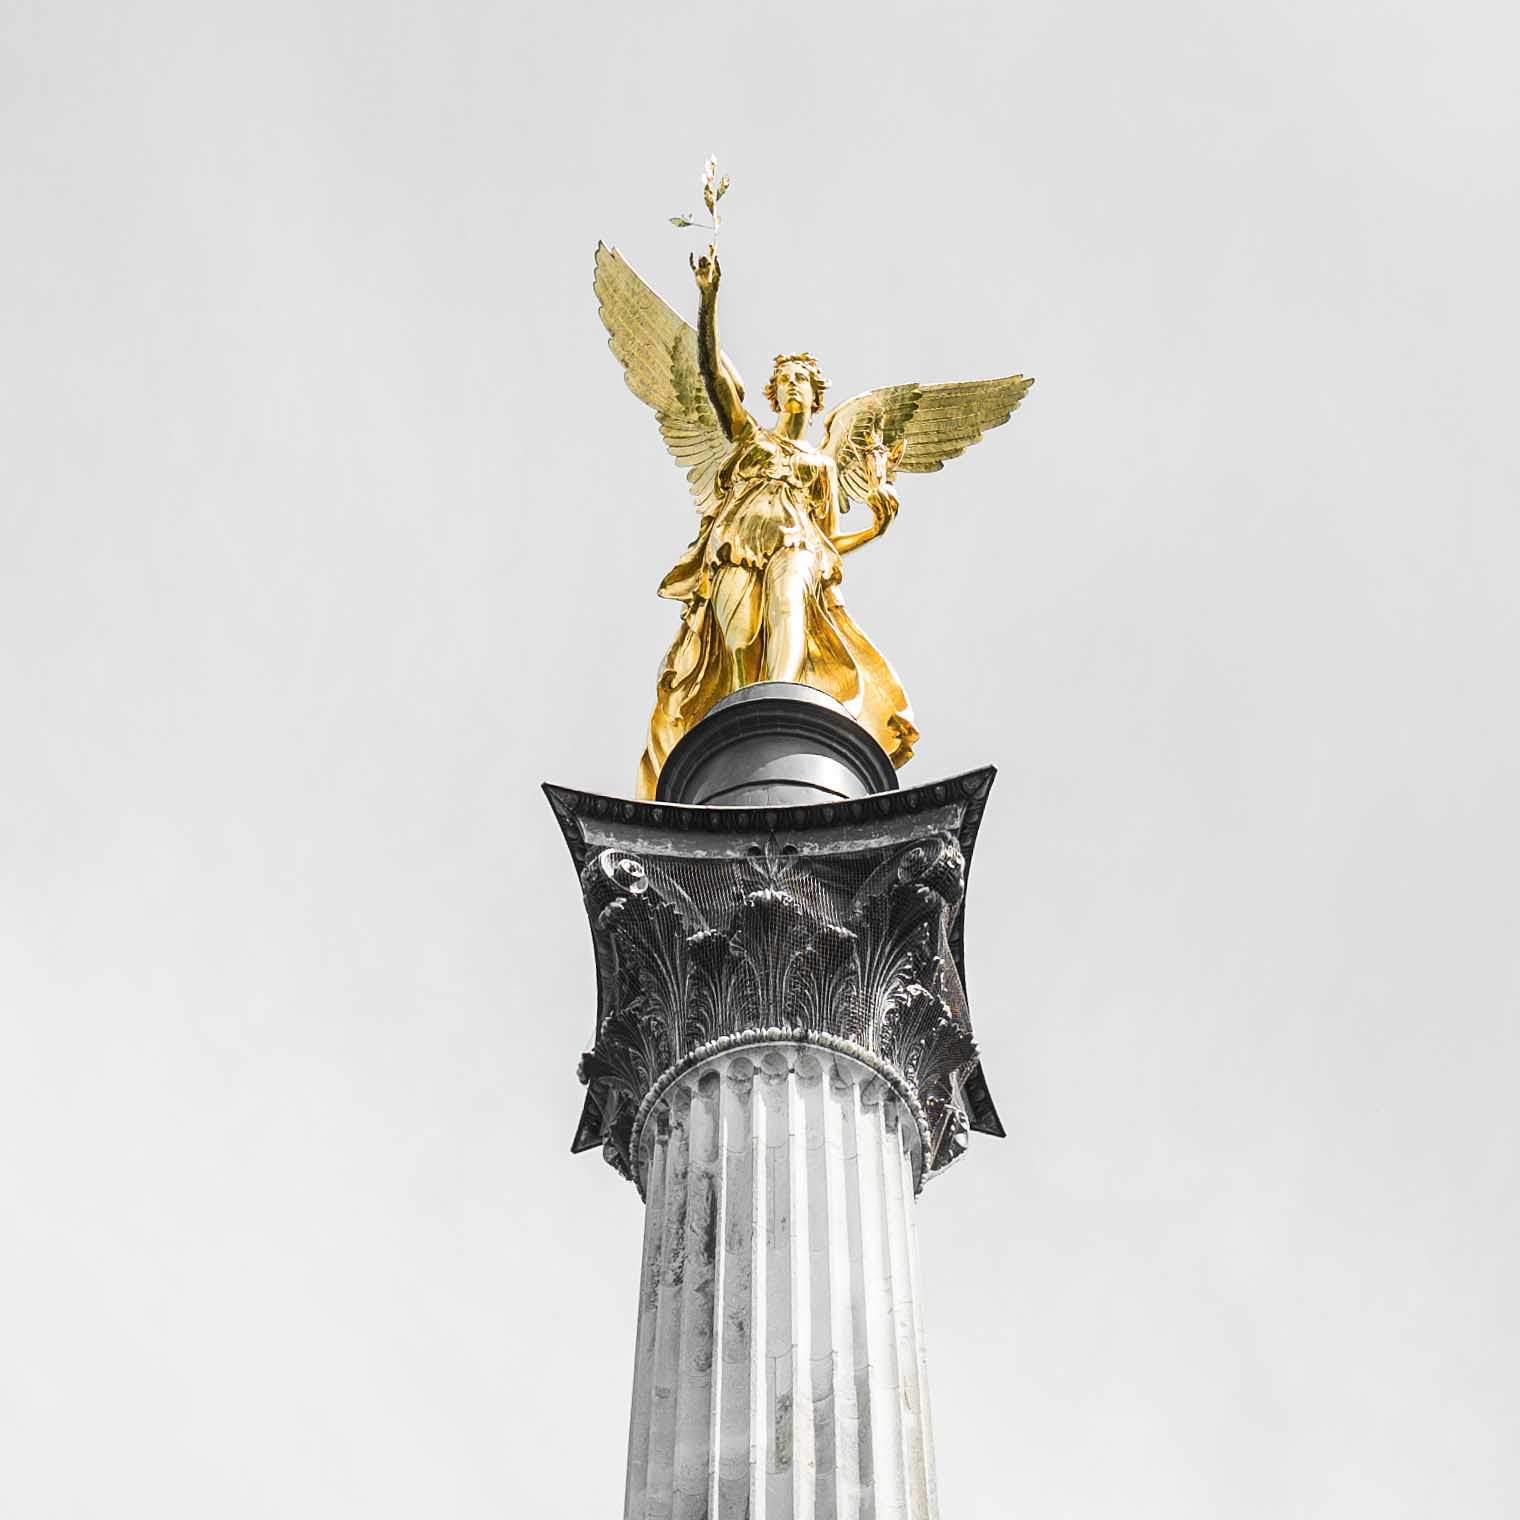 Zu sehen ist die der obere Teil des Friedensengels in München. Die Statue stellt eine Figur mit Flügeln dar, die einen Lorbeerkranz in der Hand hält. Der Himmel im Hintergrund ist bewölkt und links und rechts sind grüne Baumkronen zu sehen.